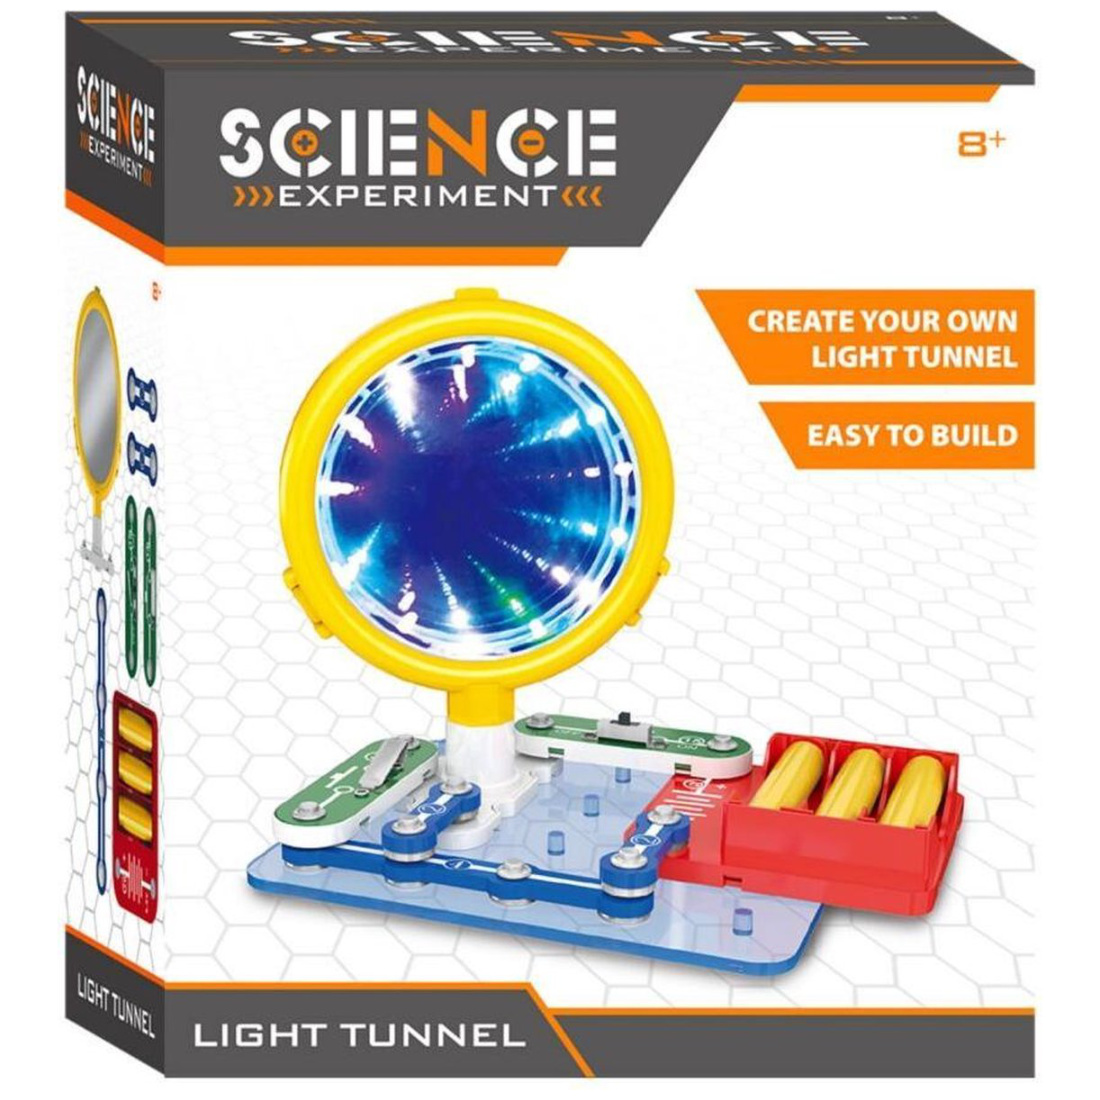 Wissenschaft baue deinen Eigenen Lichttunnel